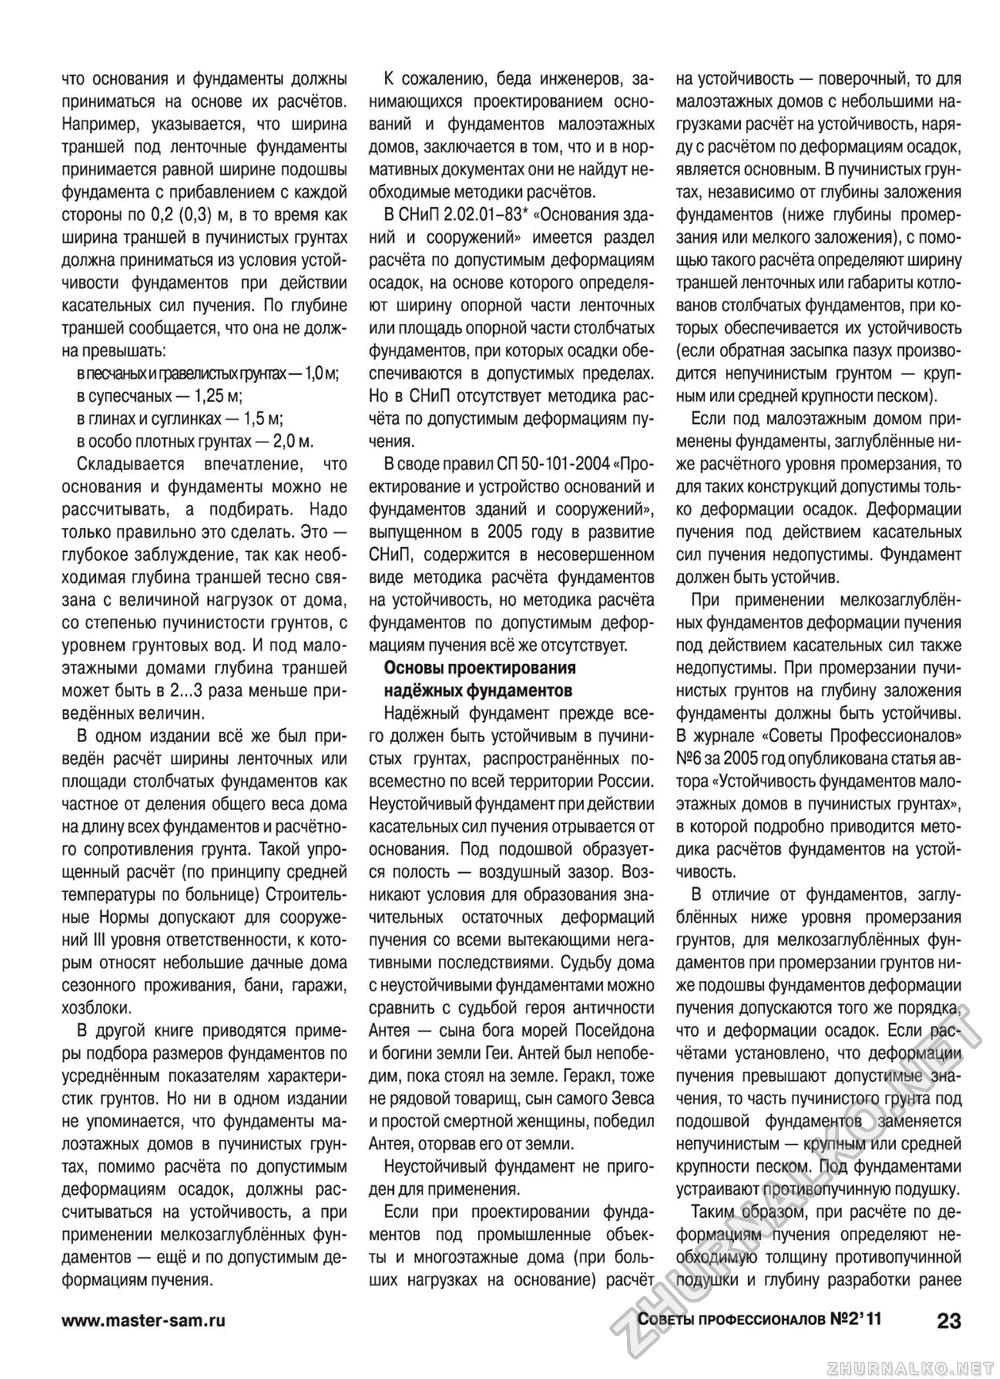 Советы профессионалов 2011-02, страница 23